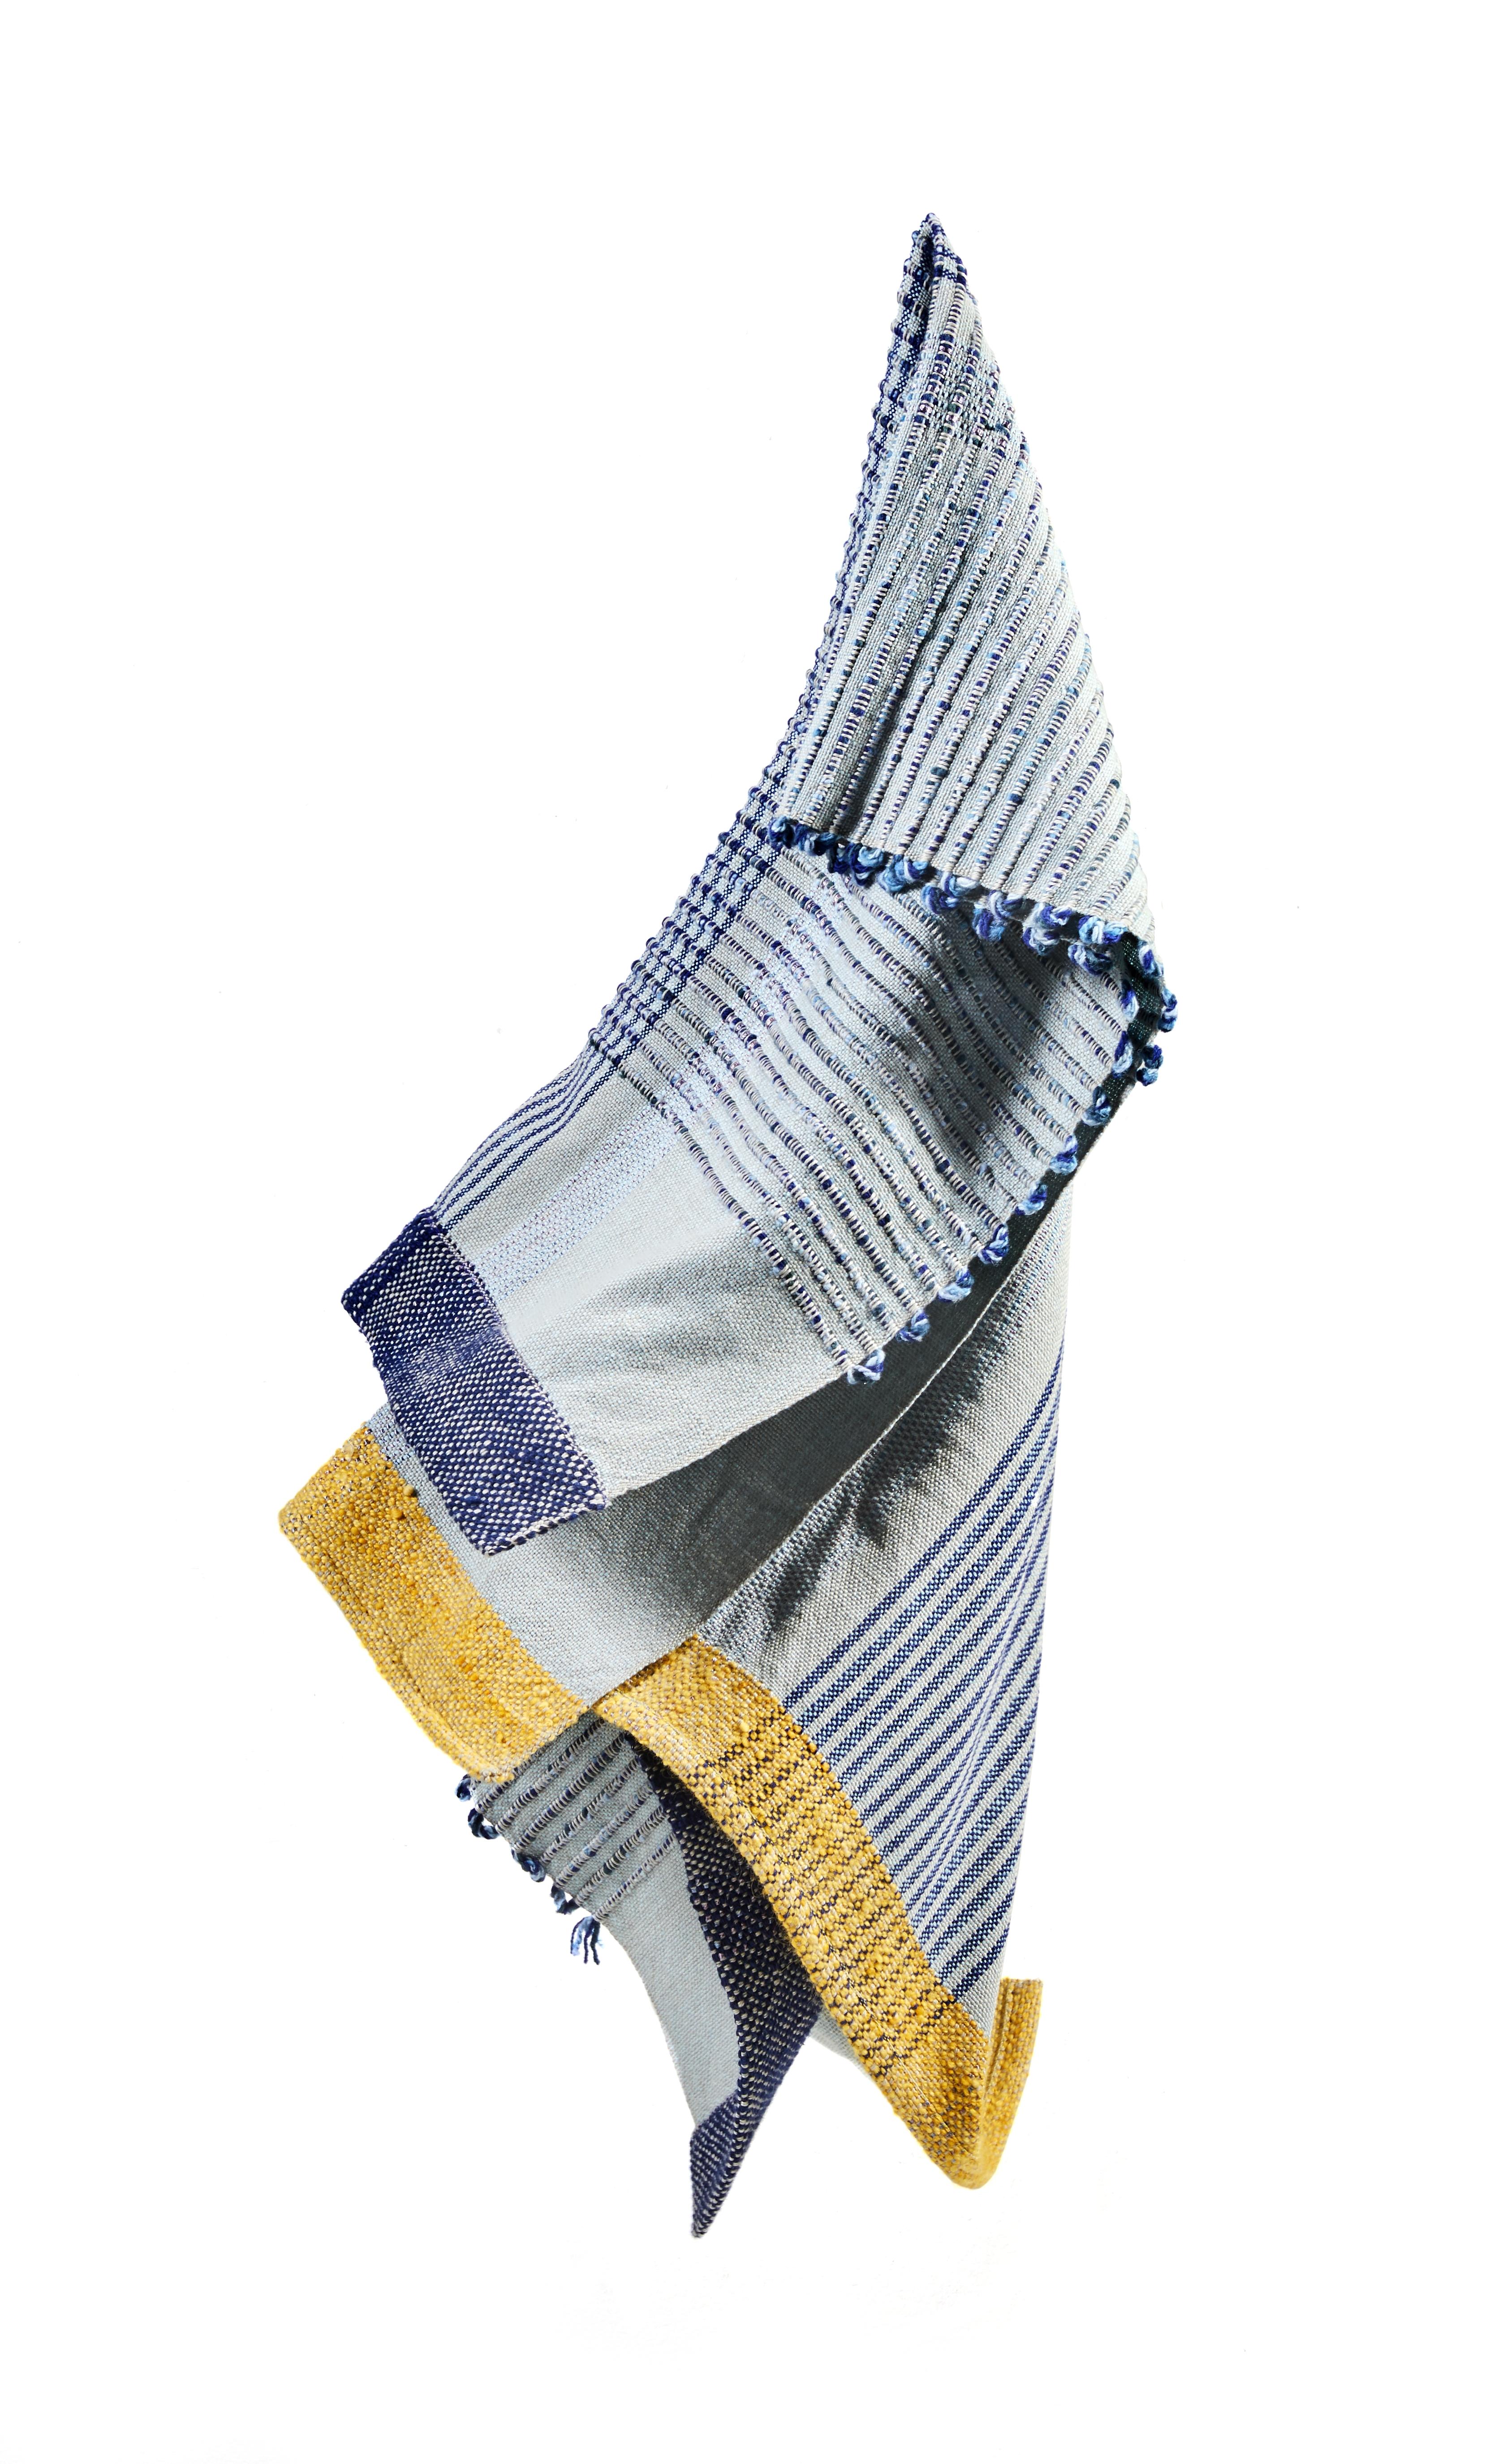 Couverture Chumbes 1 par Mae Engelgeer
Matériaux : 100% coton. 
Technique : tissé à la main en Colombie. 
Dimensions : L 200 x H 120 cm 
Disponible dans les couleurs : bleu/banane/argent et terracotta/lavanda/or.

La couverture Chumbes est un